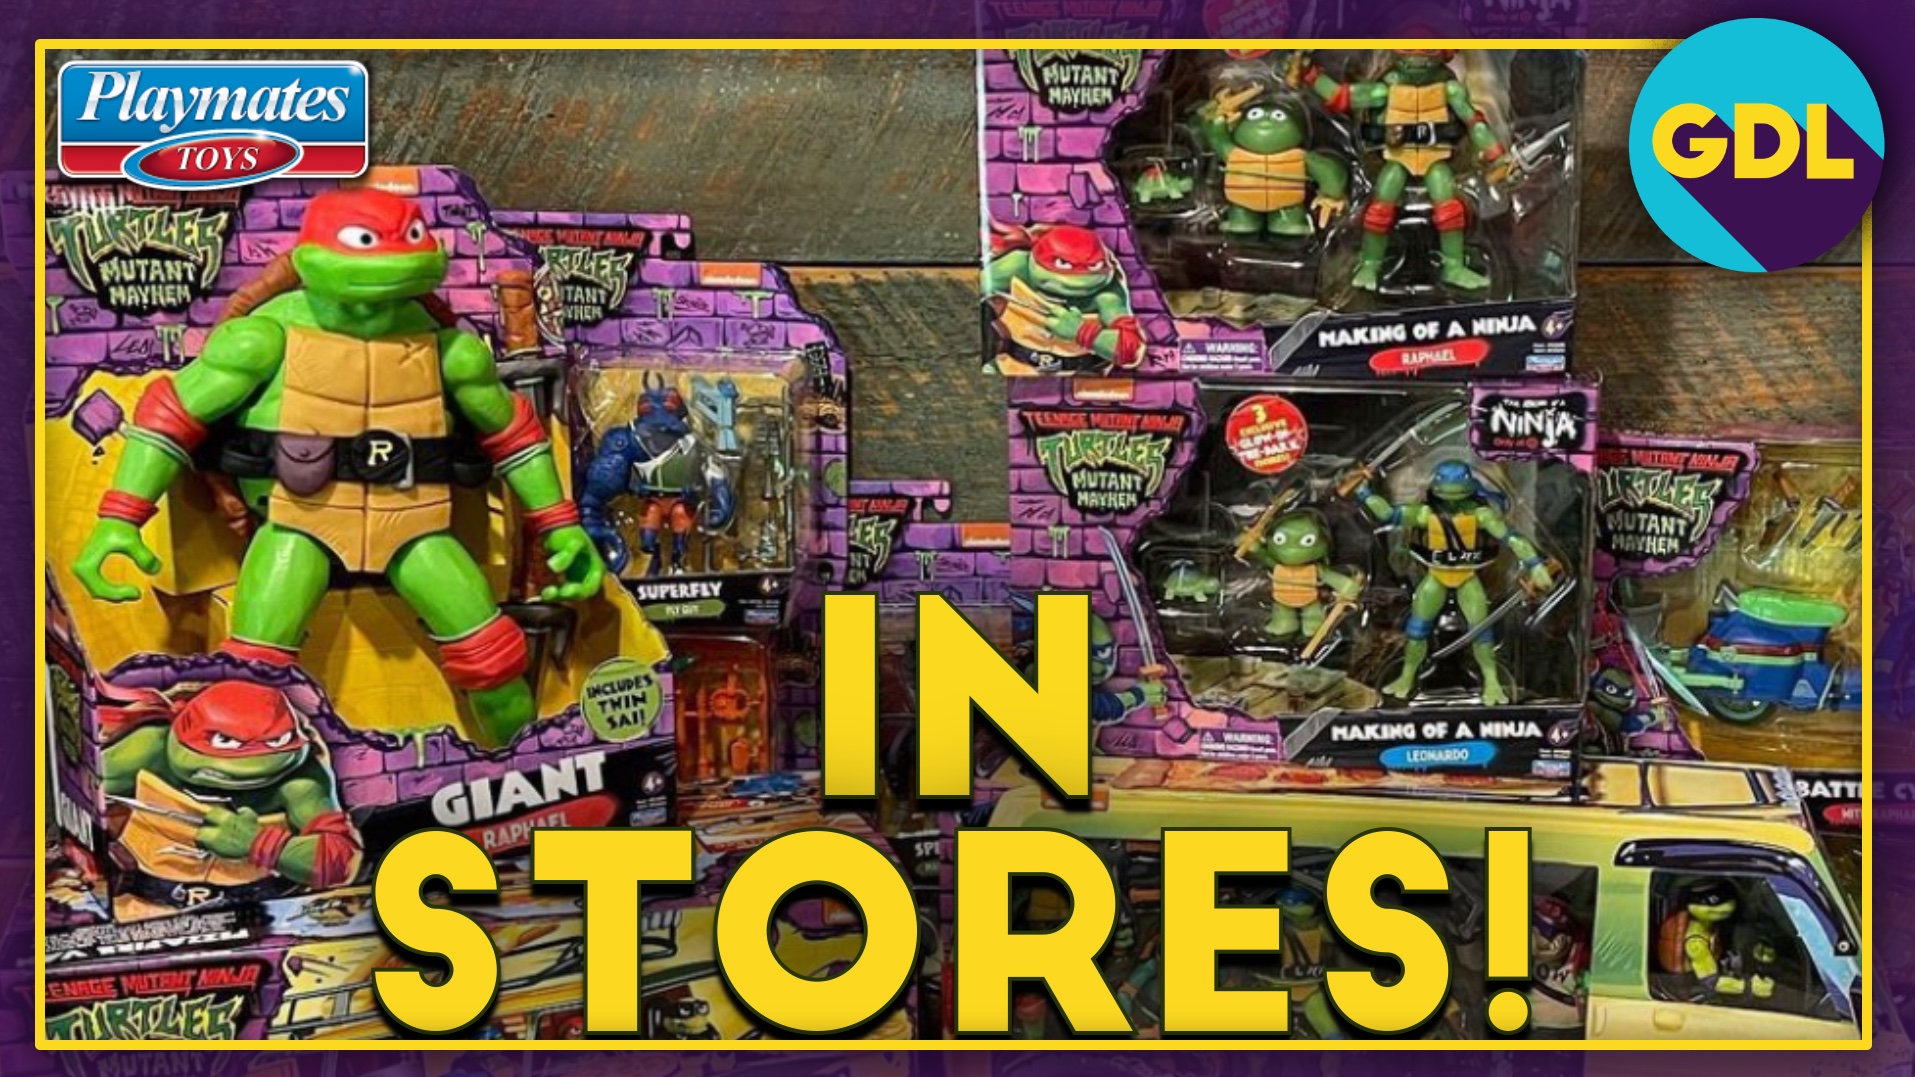 The Playmates Mutant Mayhem toyline hits store shelves today! : r/TMNT